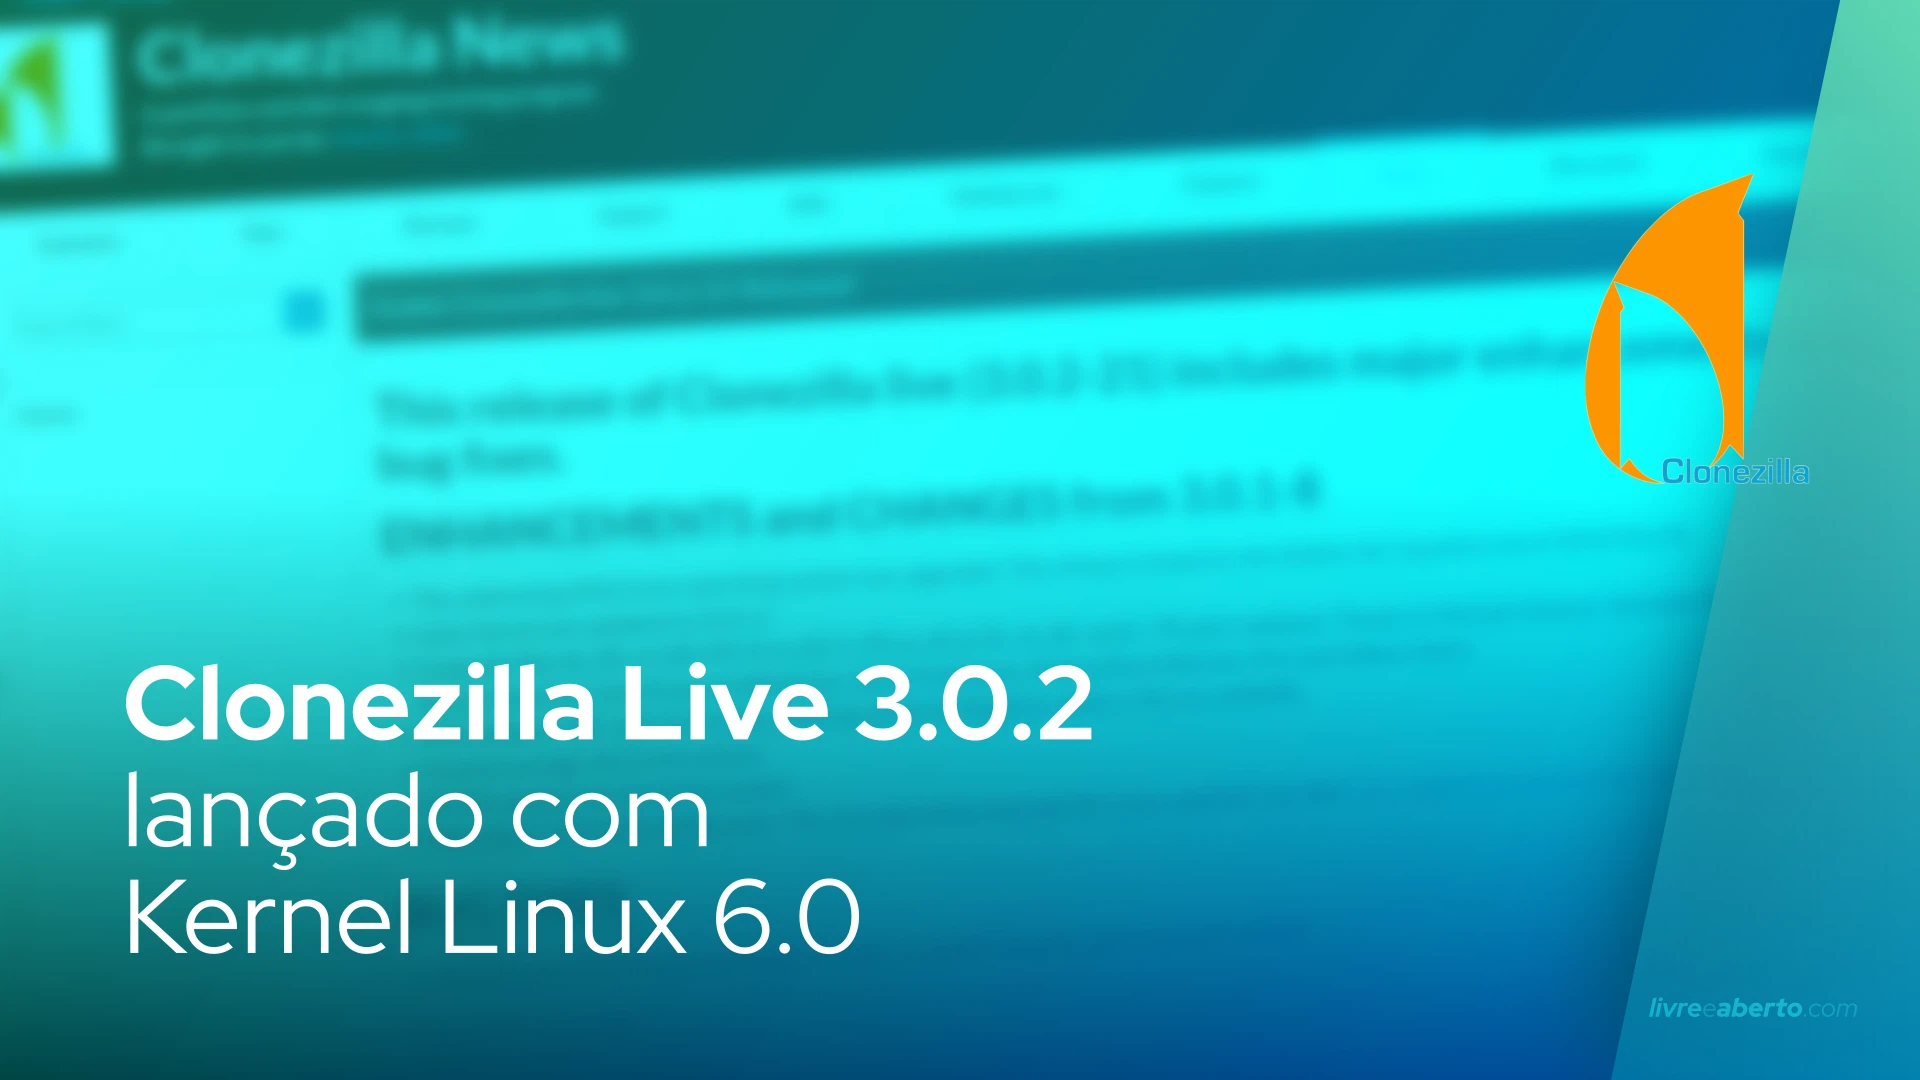 Clonezilla Live 3.0.2 lançado com Kernel Linux 6.0